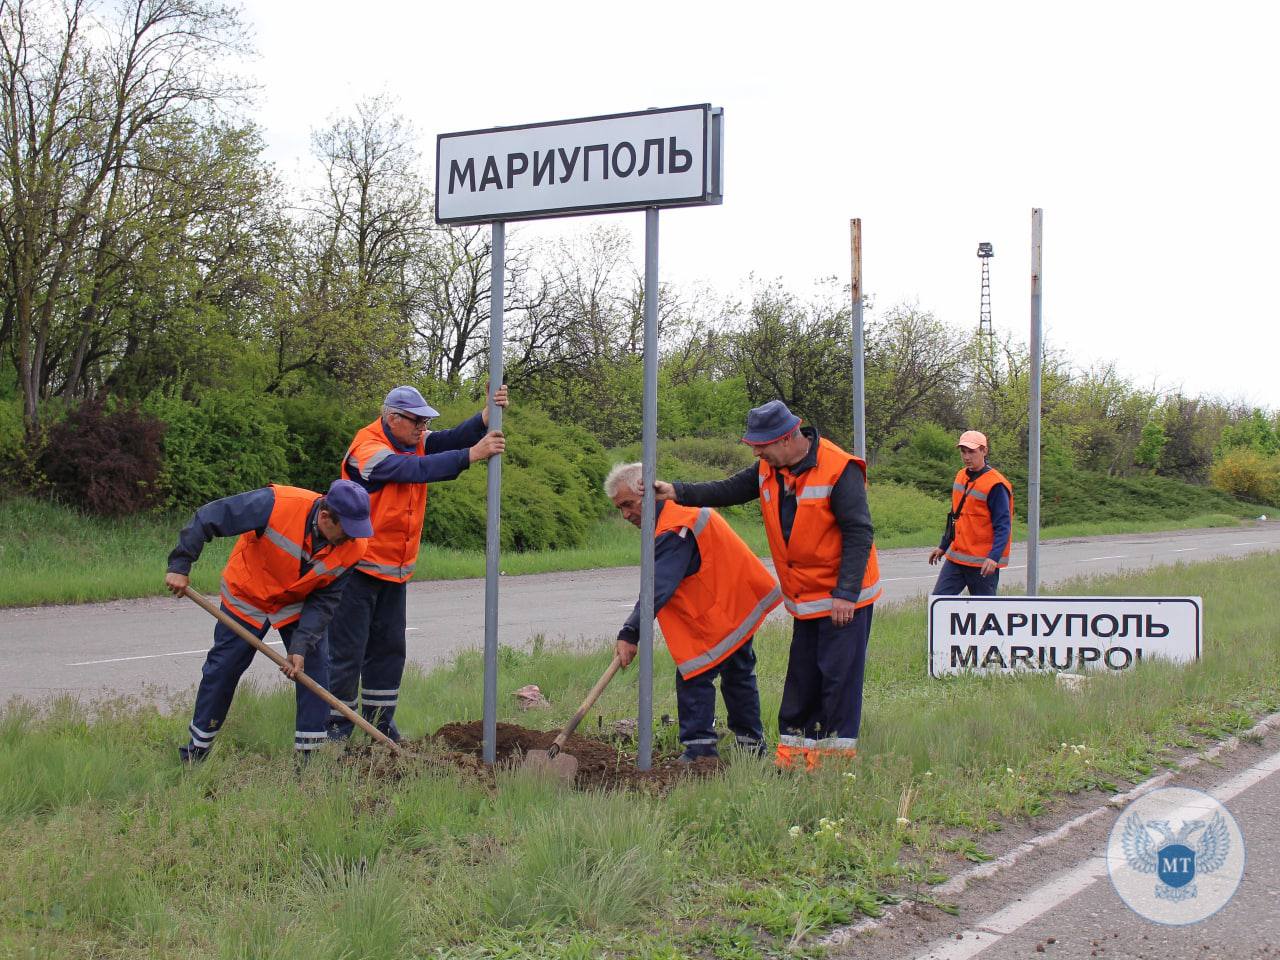 В Мариуполе меняют указатели, подписывая на русском